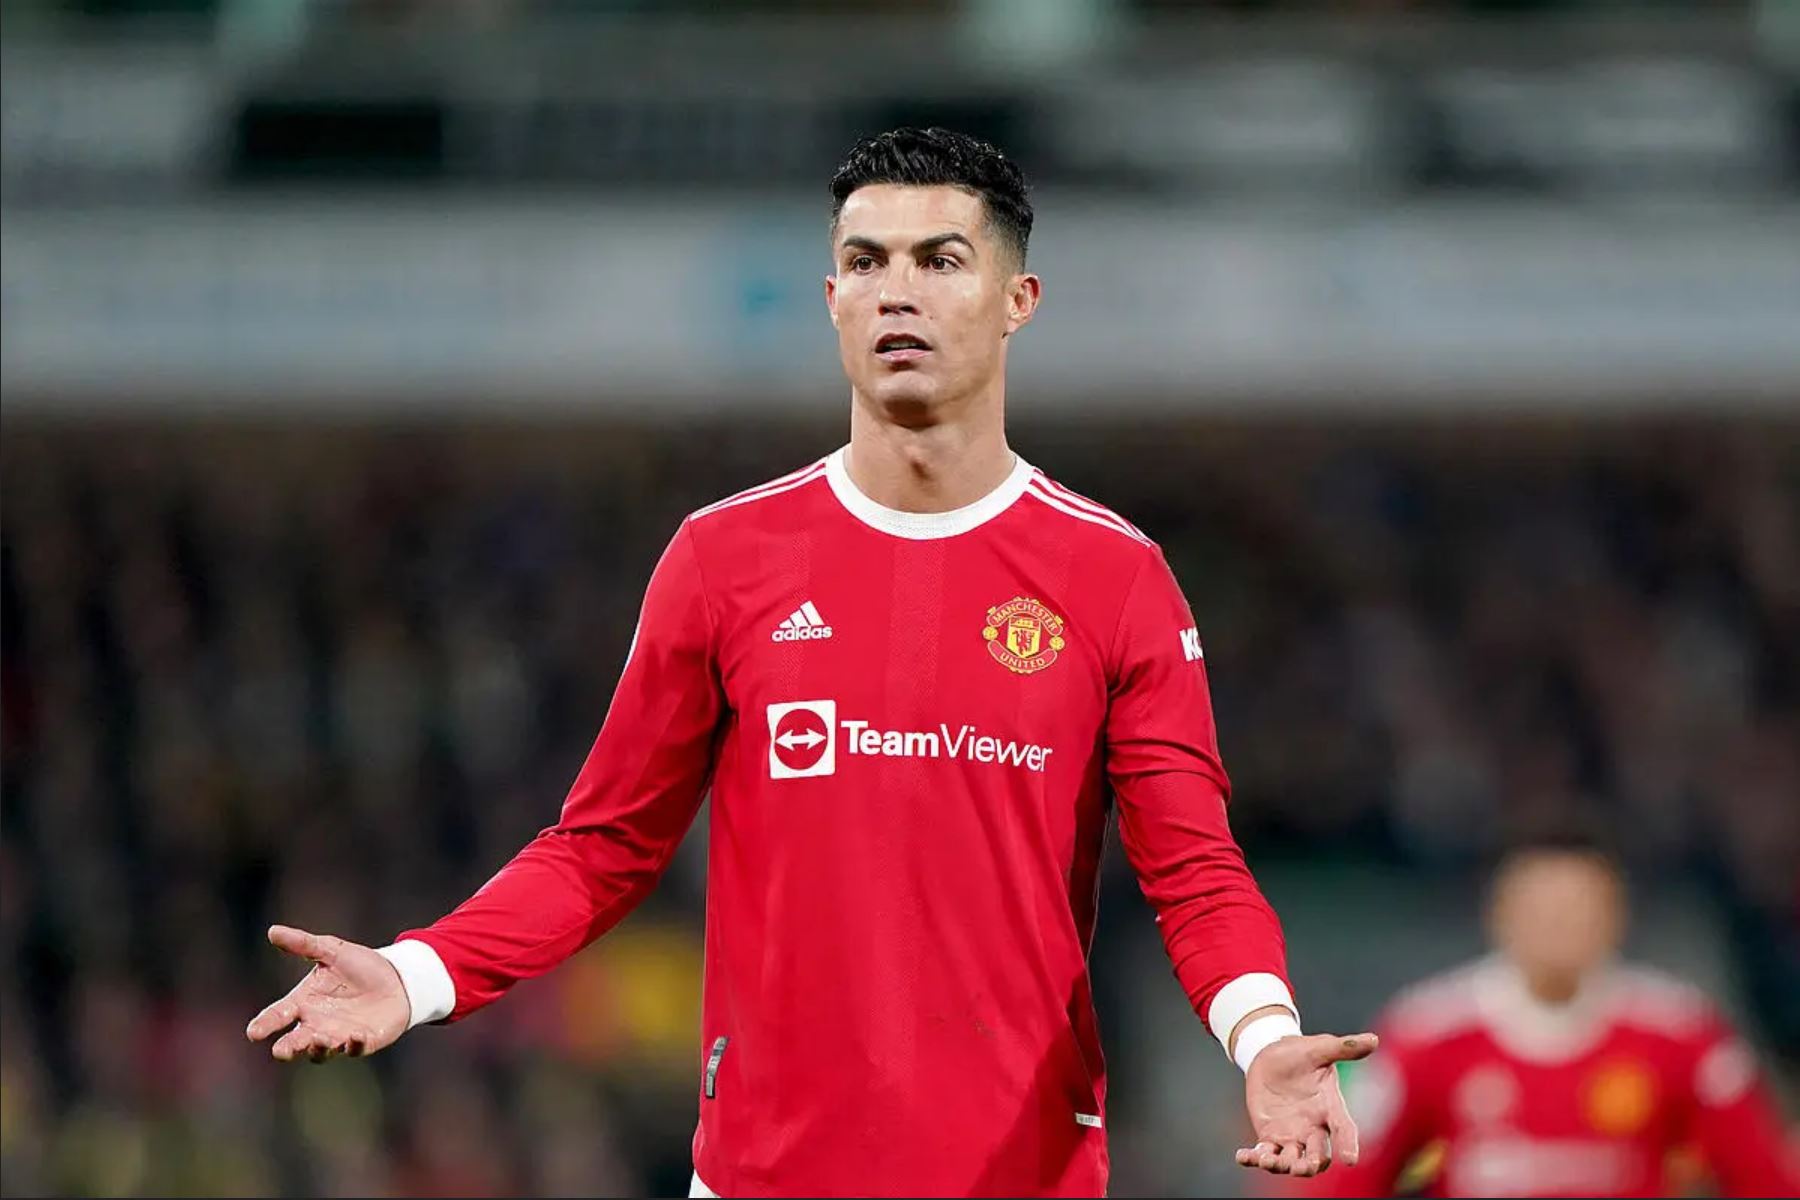 Cristiano Ronaldo en colère, il détruit le téléphone d’un jeune garçon et présente ses excuses